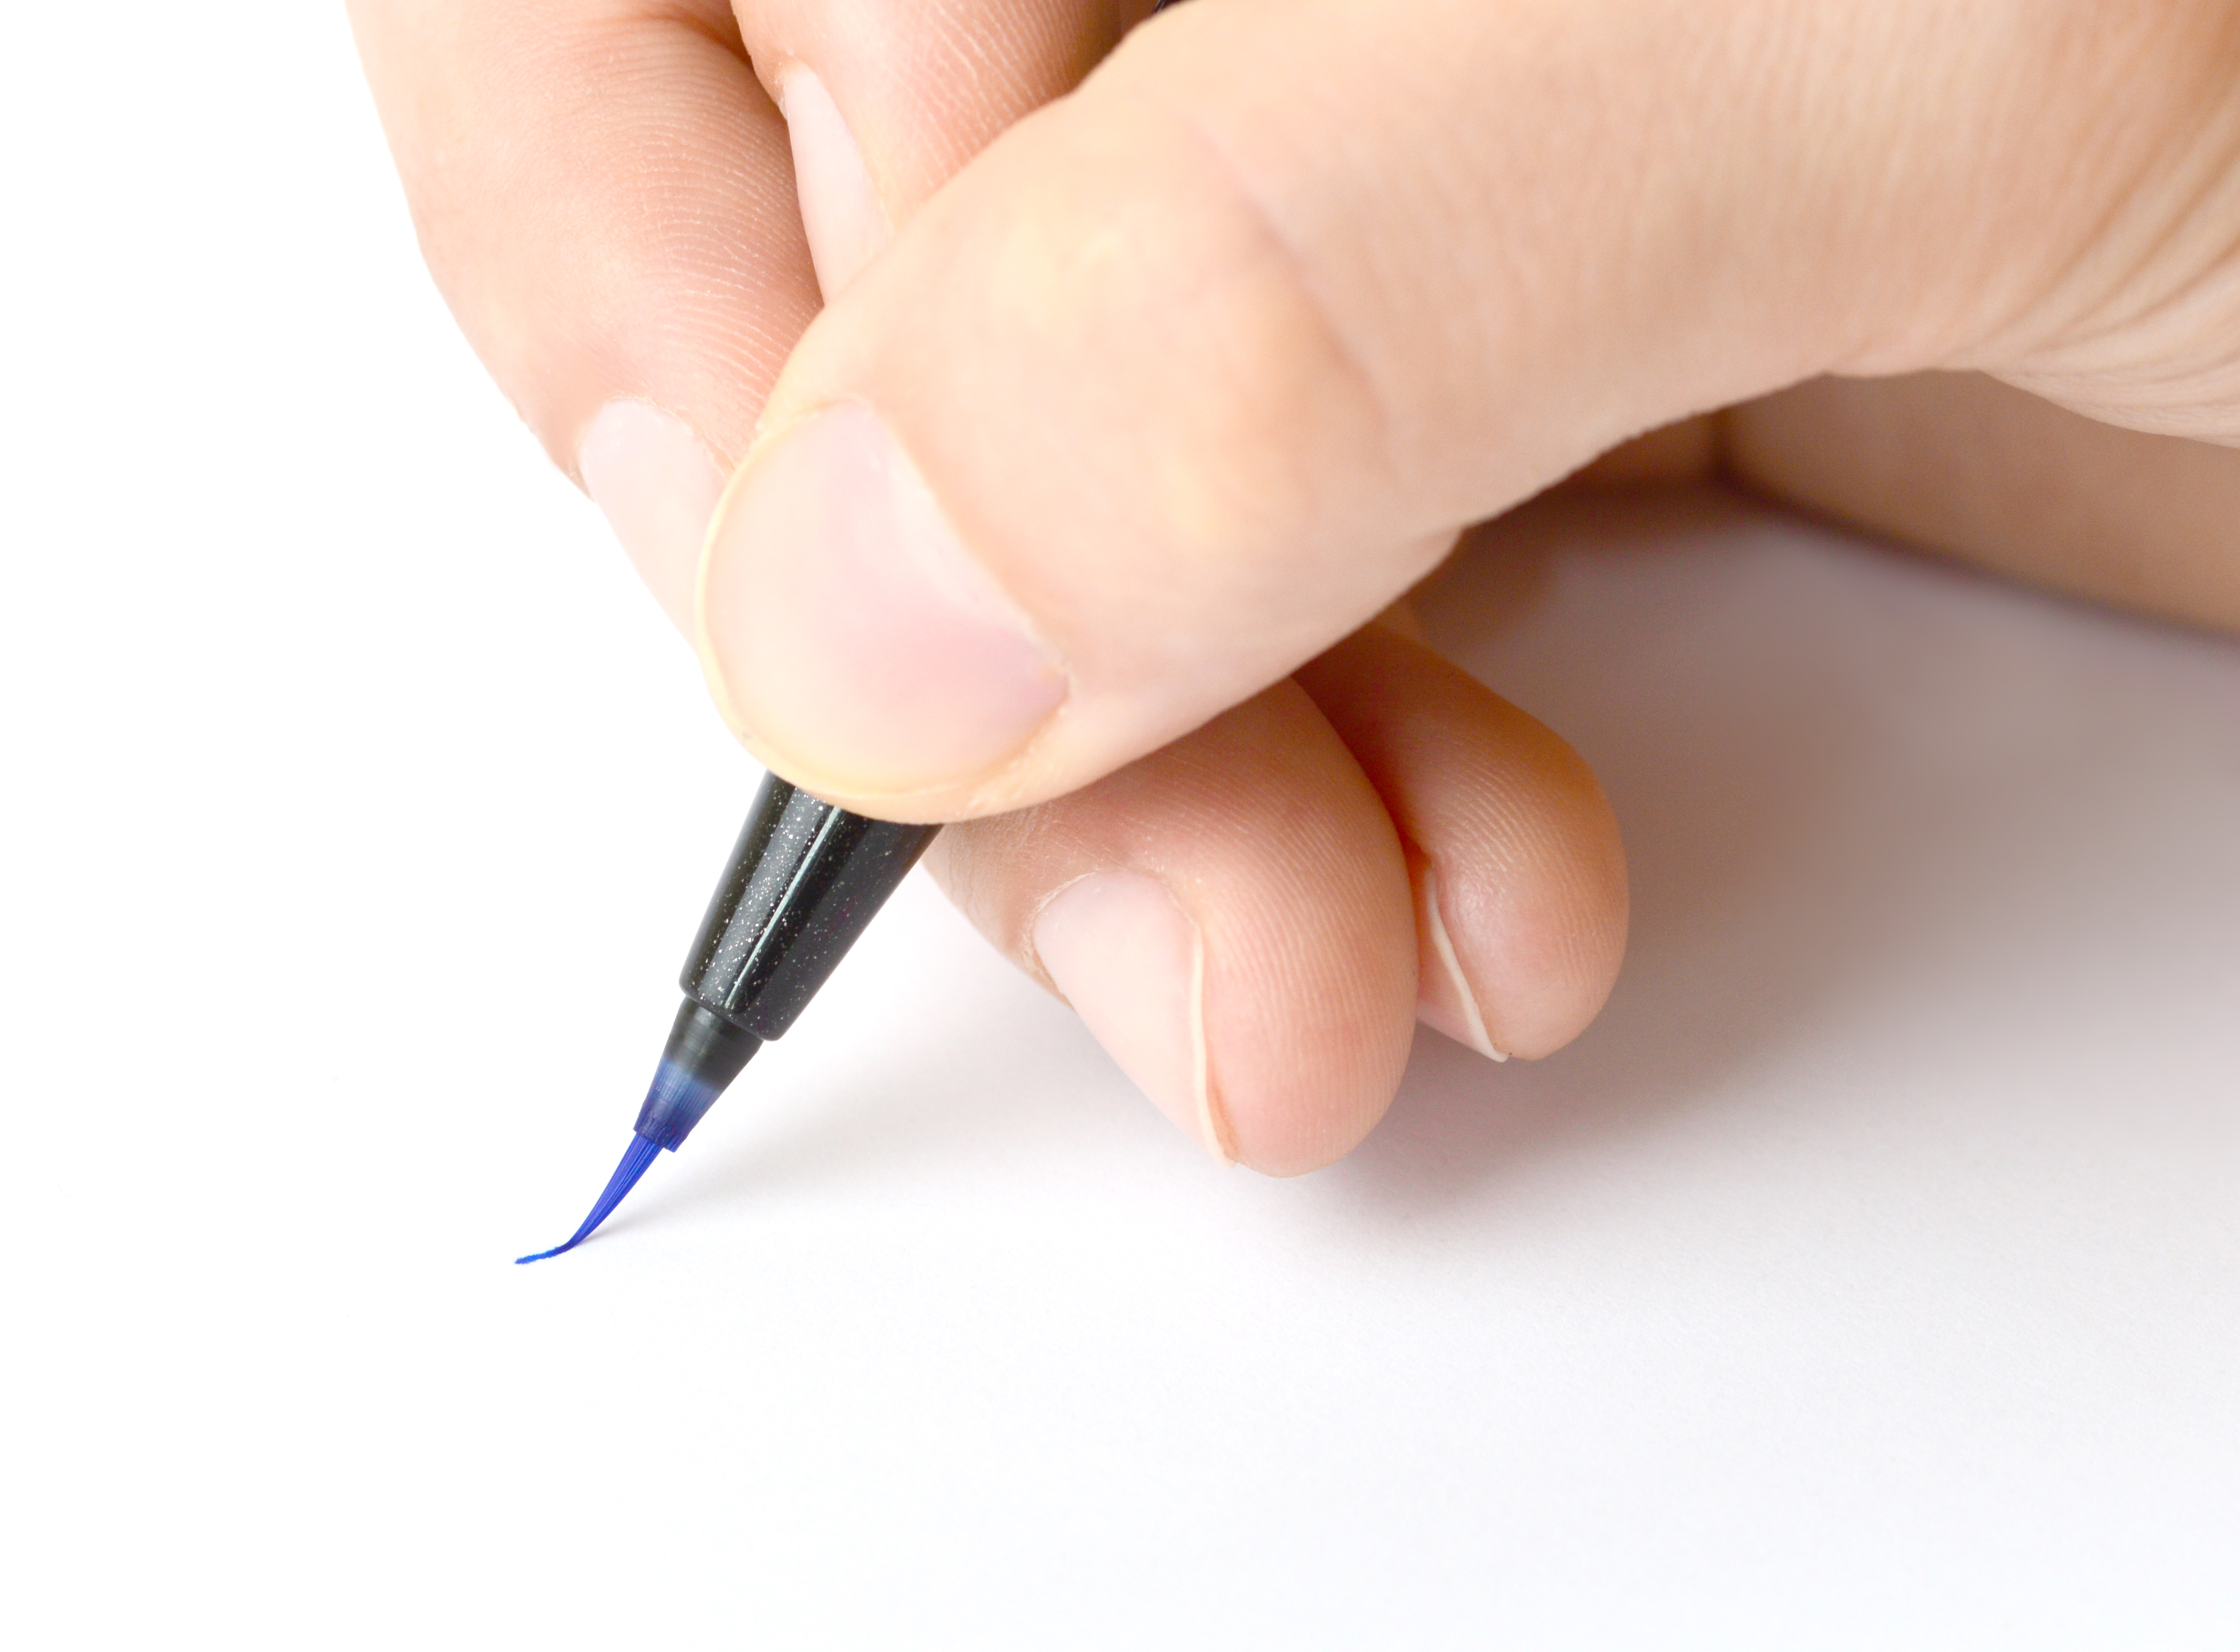 Pinselstift Brush Sign Pen Artist